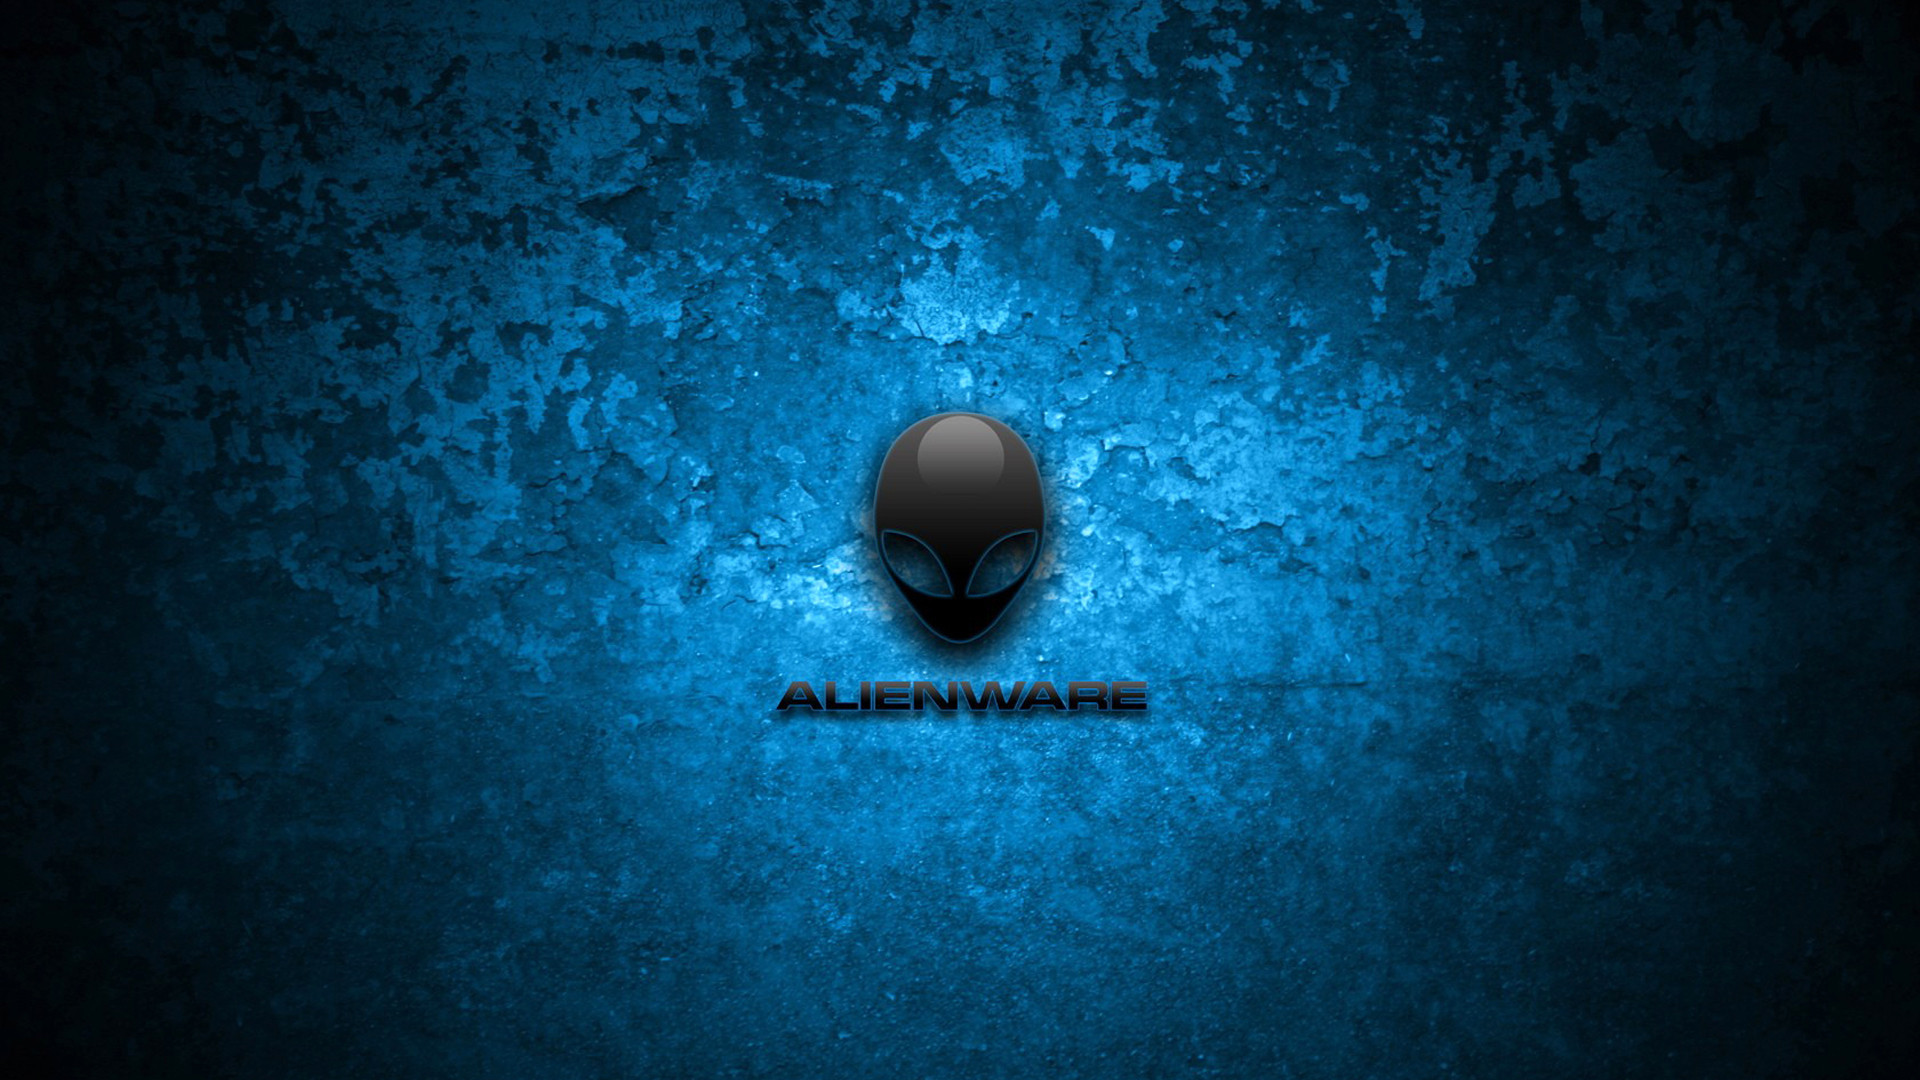 1920x1080 36 Wonderful Blue Alienware Wallpaper